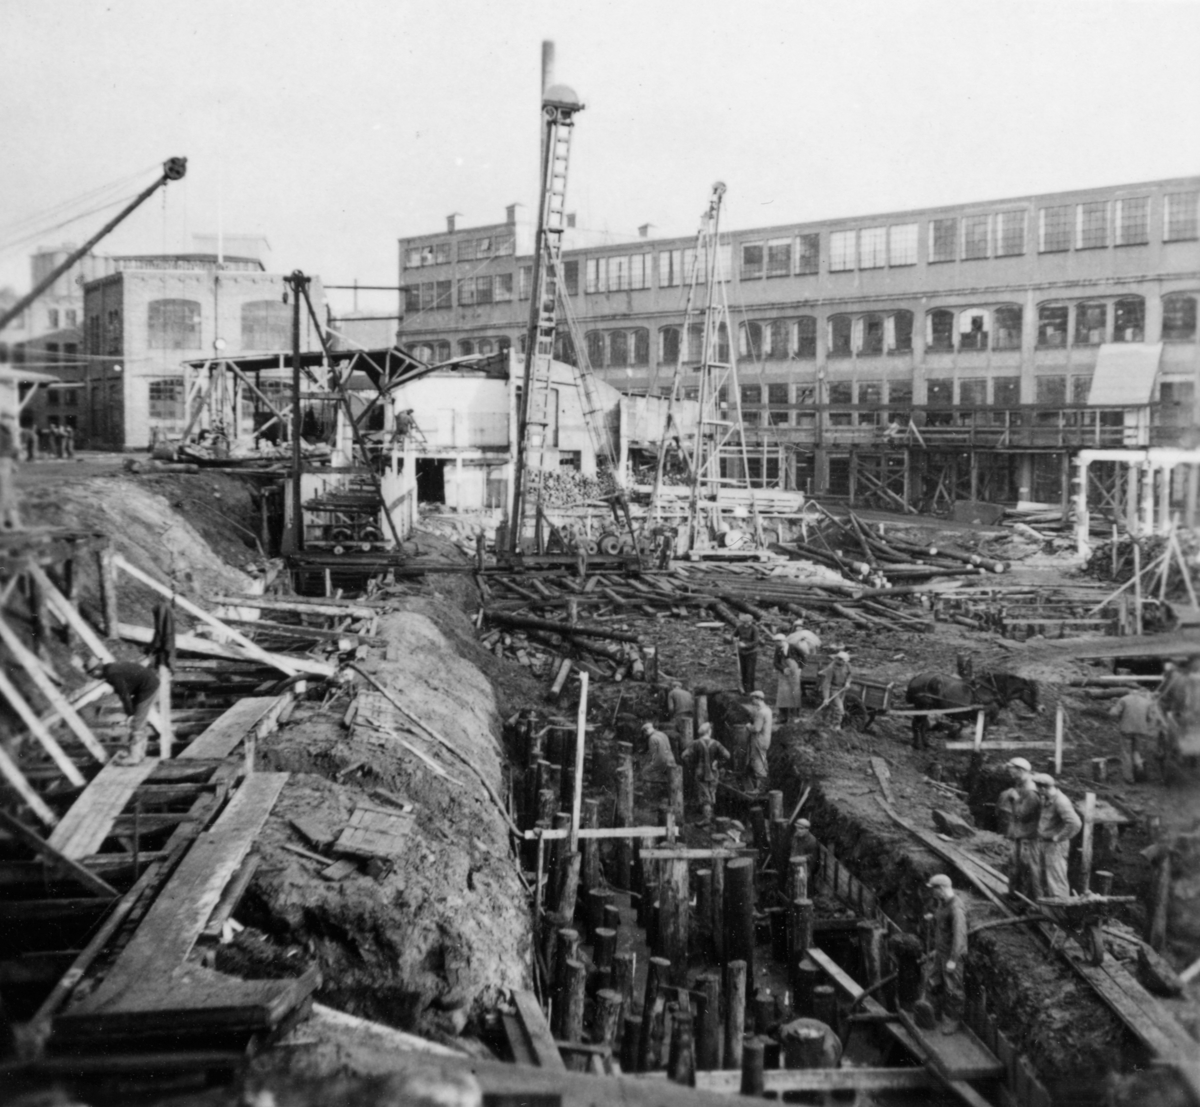 Lagerbyggnad 110 och 111 under uppbyggnad på Papyrus fabriksområde, 17/11-1945.
Några män är med på bilden.